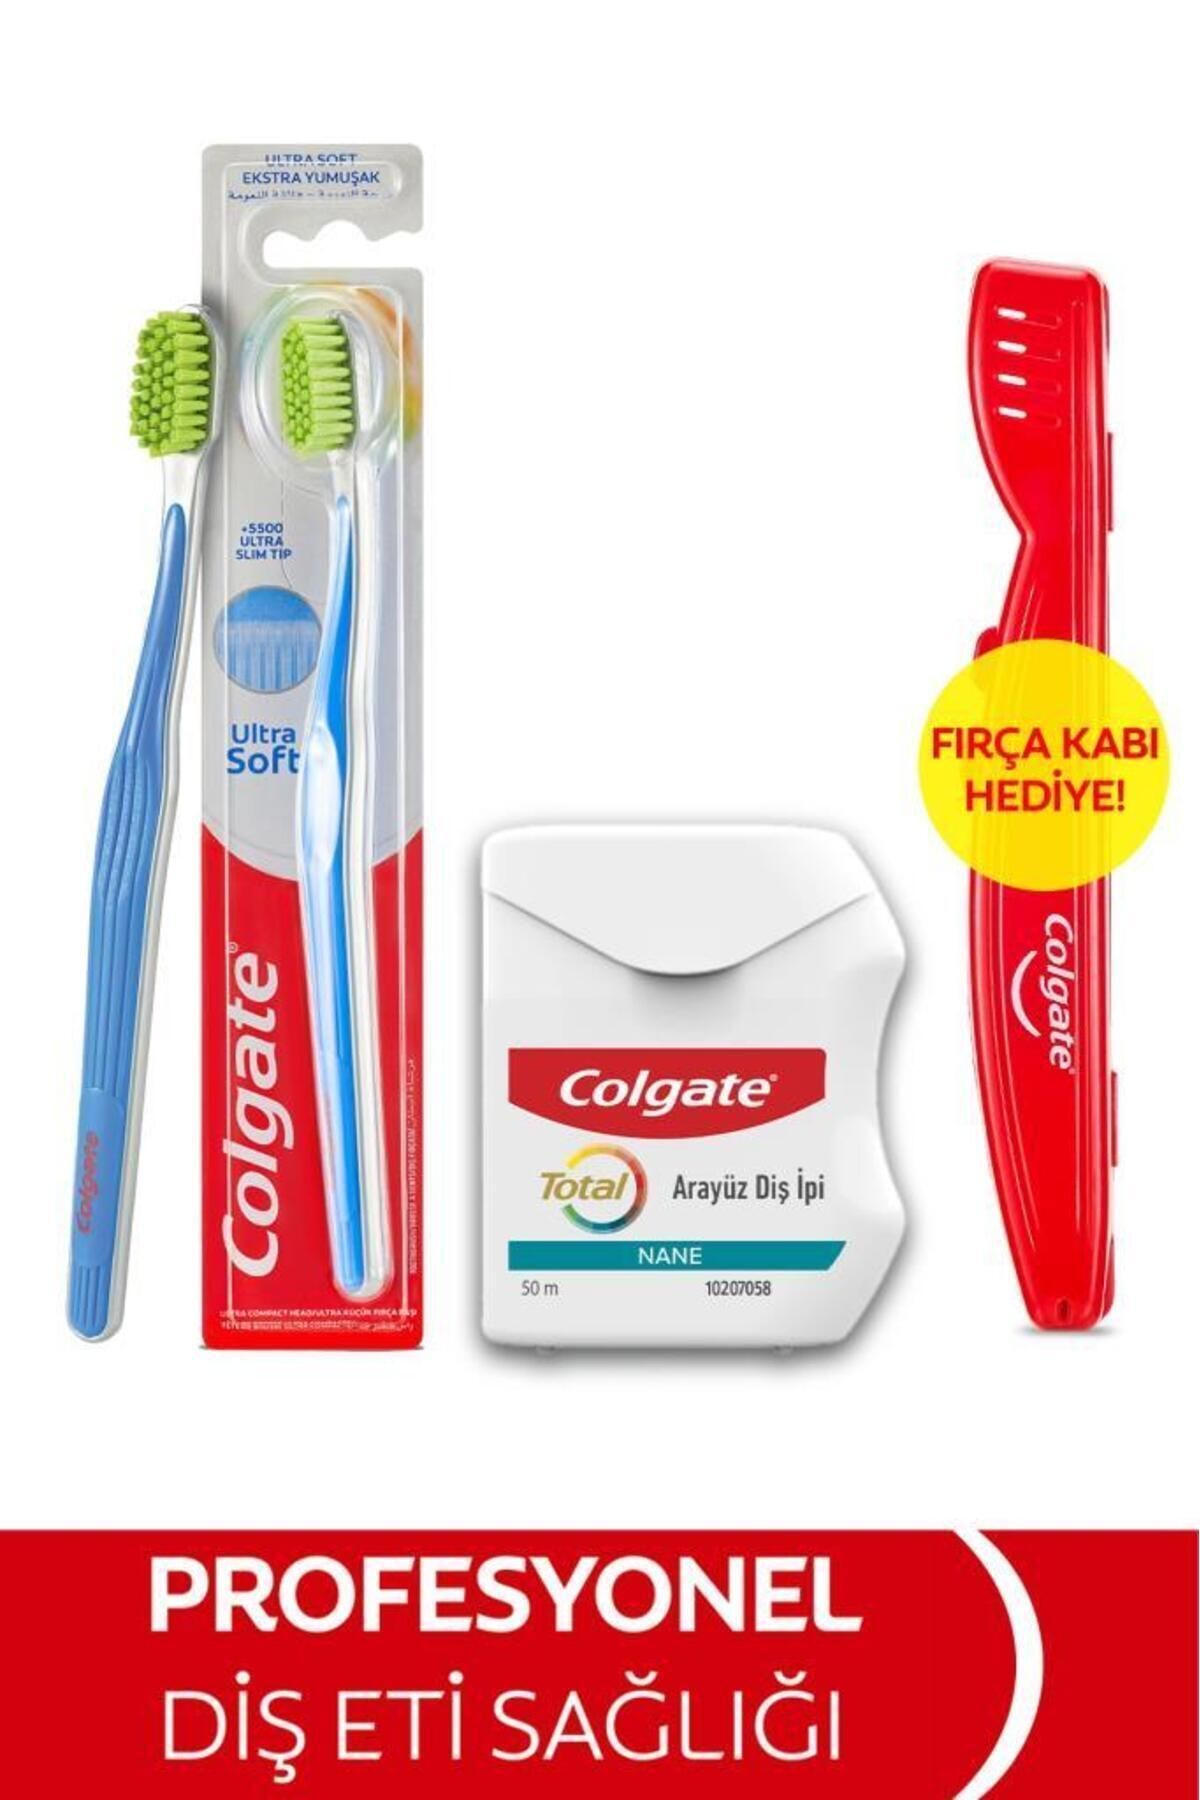 Colgate Ultra Soft Diş Fırçası, Colgate Diş İpi 50 Metre + Fırça Kabı Hediye